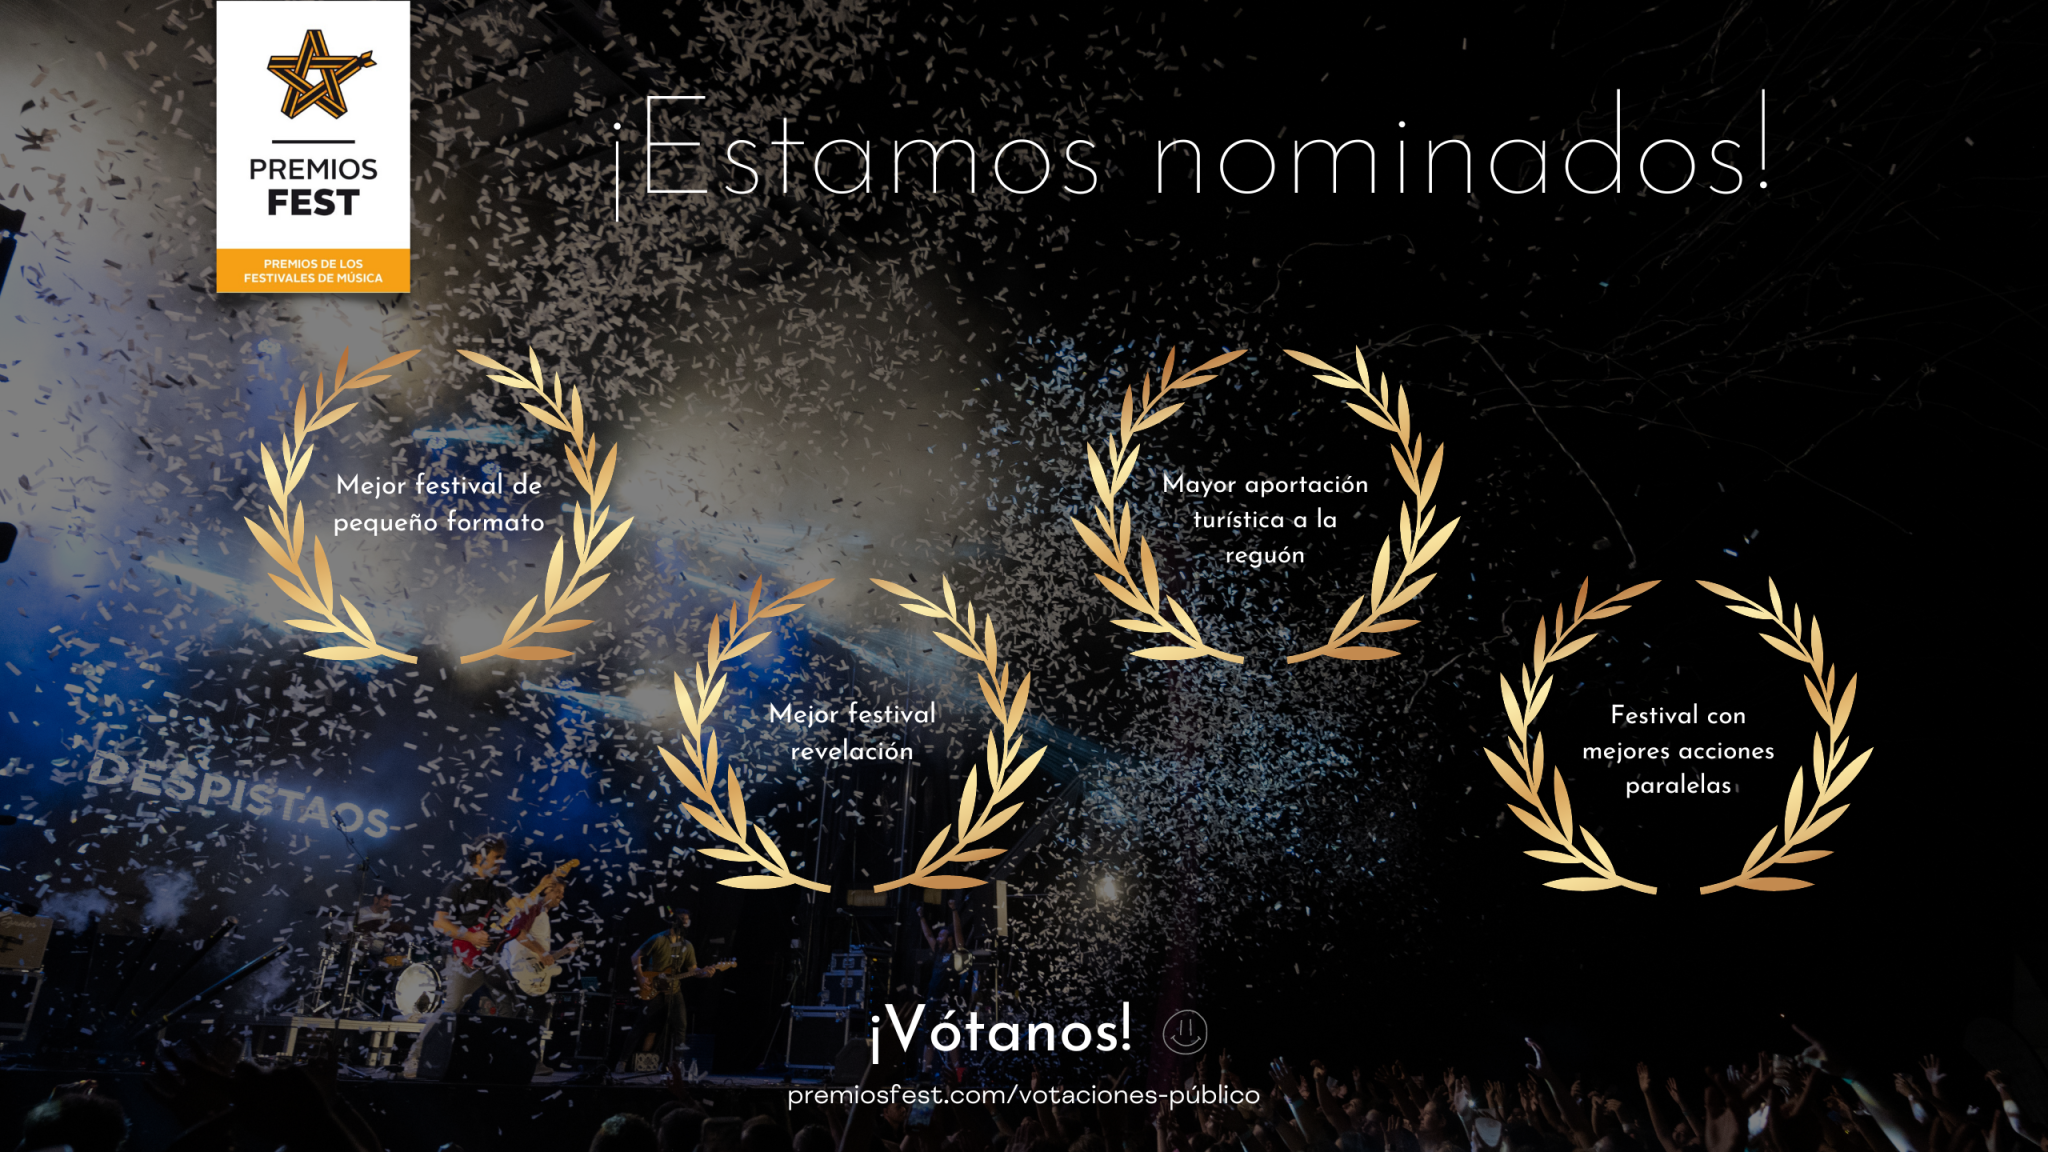 El impacto Fest, nominado en cuatro categorías de los premios Fest 2022 2